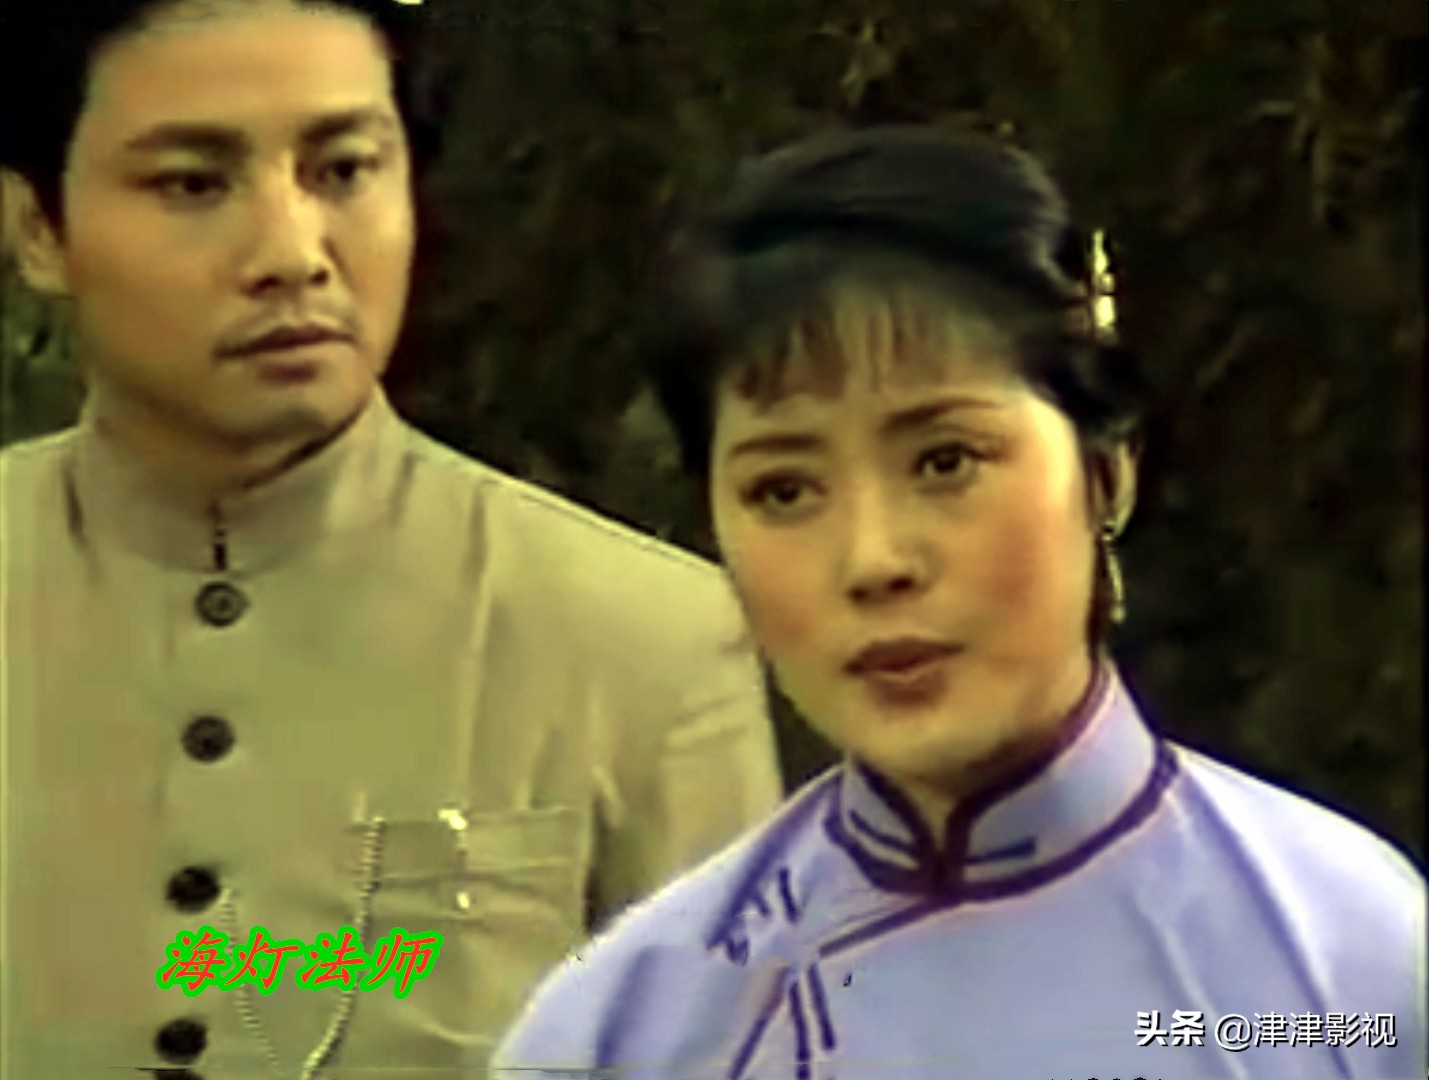 《海灯法师》，一部30多年前的电视剧，唐僧汪粤参加了演出